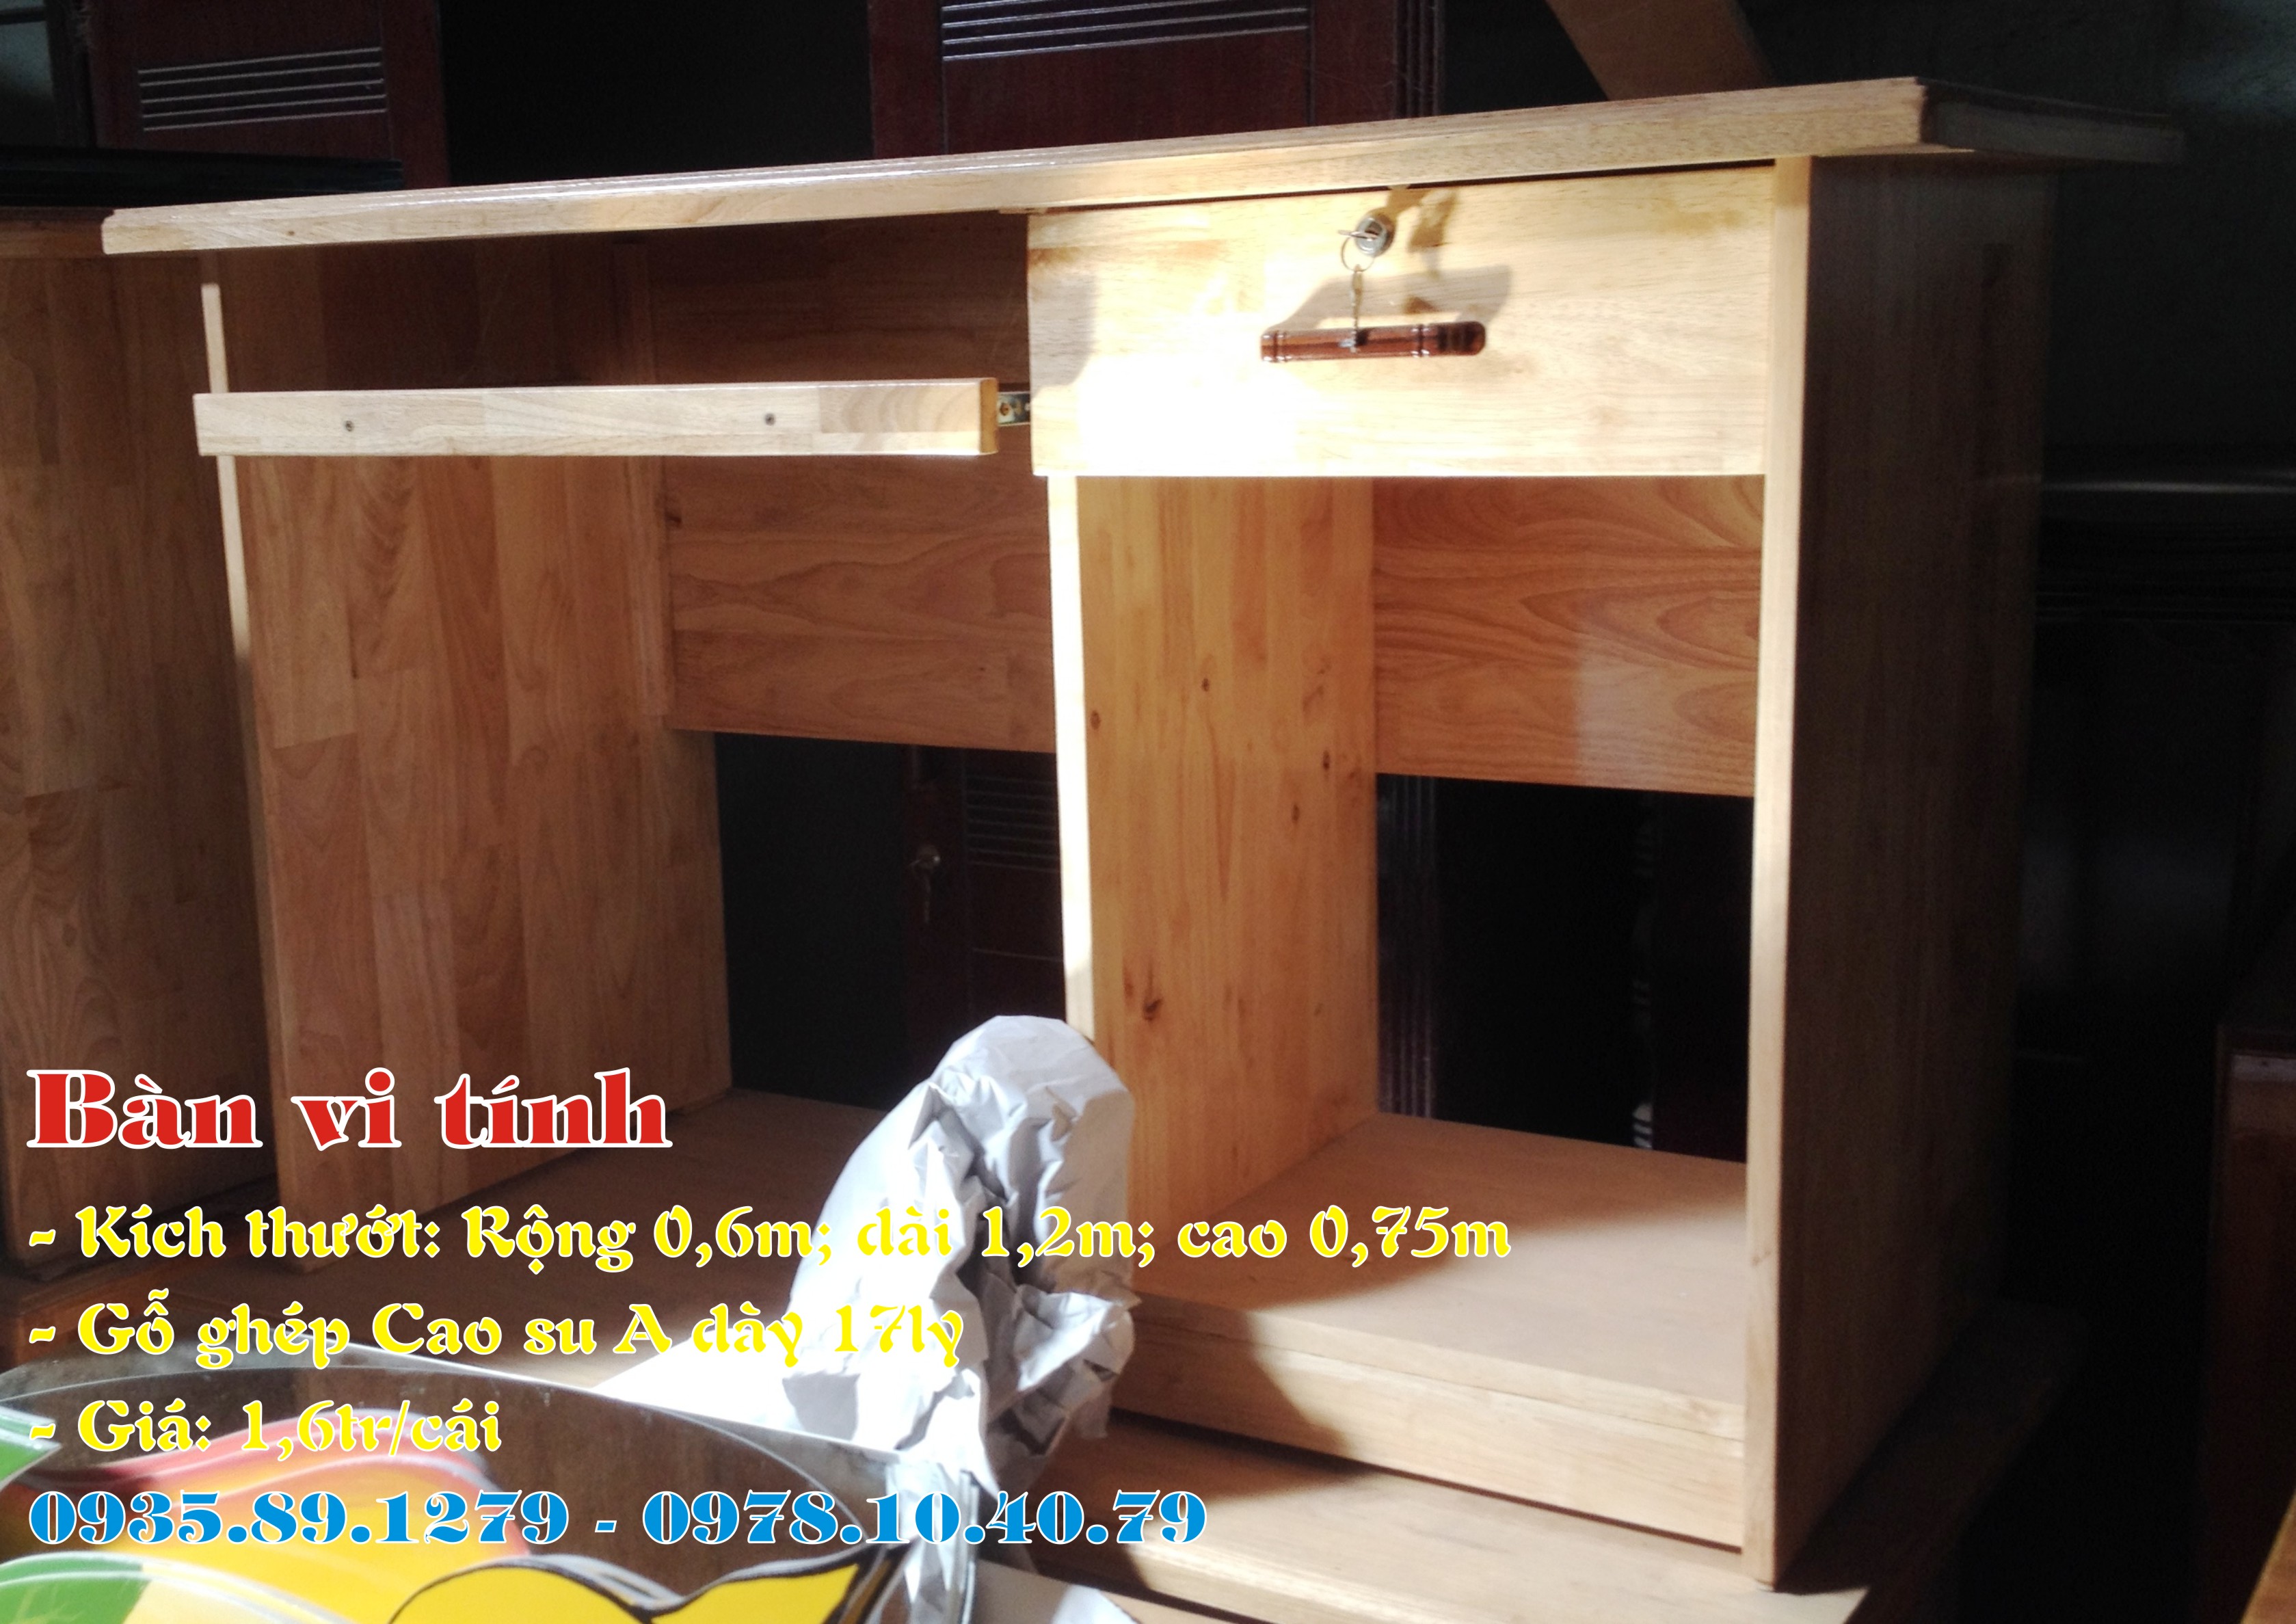 Cung cấp bàn ghế gỗ cafe, quán ăn . . . nội thất giá rẻ nhất ở Bình Định 974149775983261